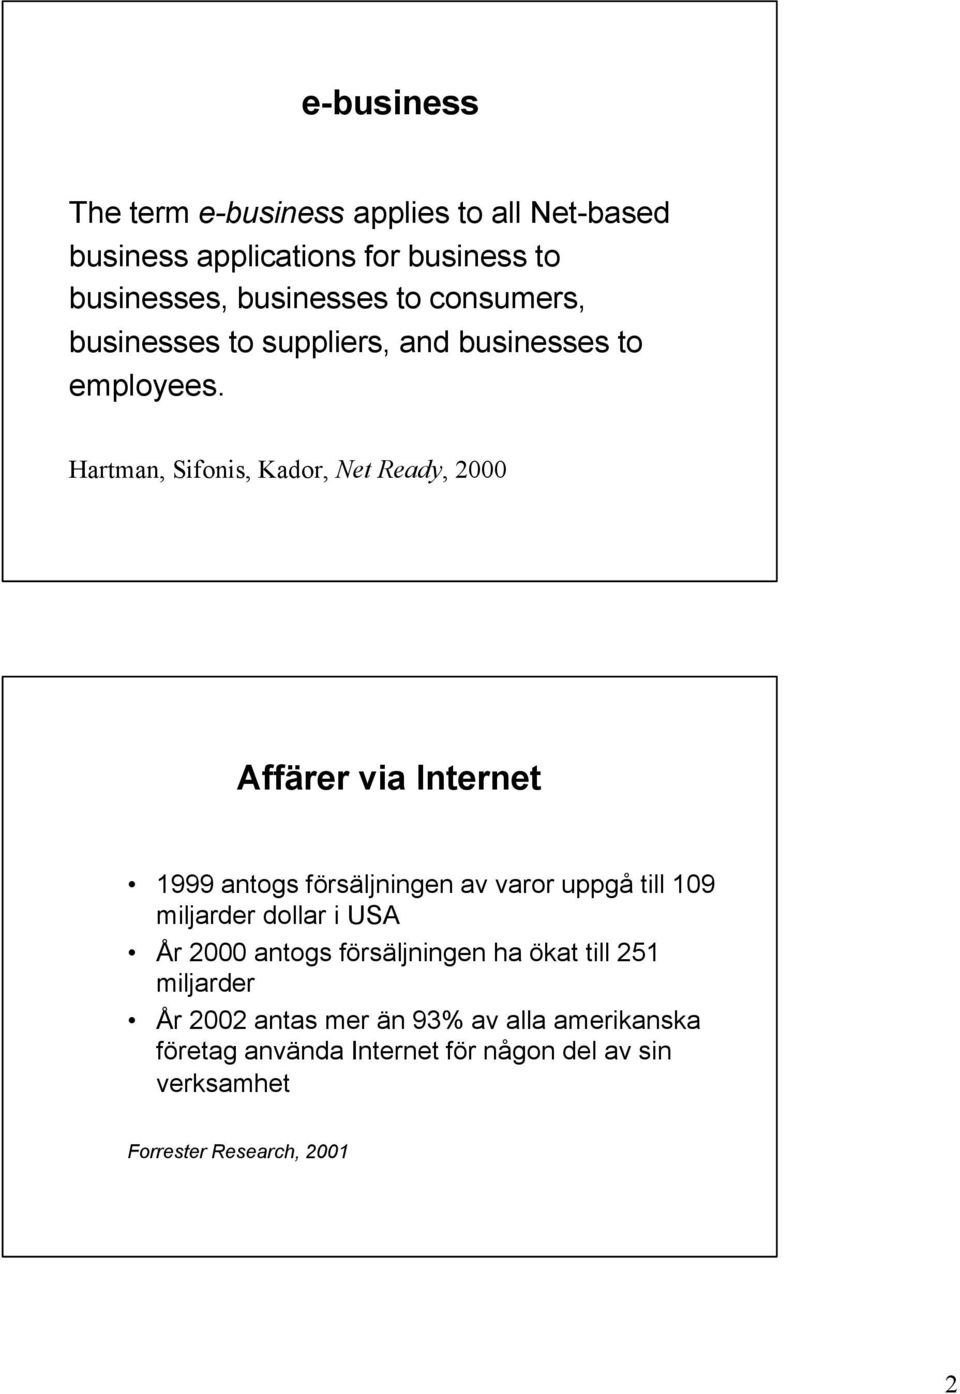 Hartman, Sifonis, Kador, Net Ready, 2000 Affärer via Internet 1999 antogs försäljningen av varor uppgå till 109 miljarder